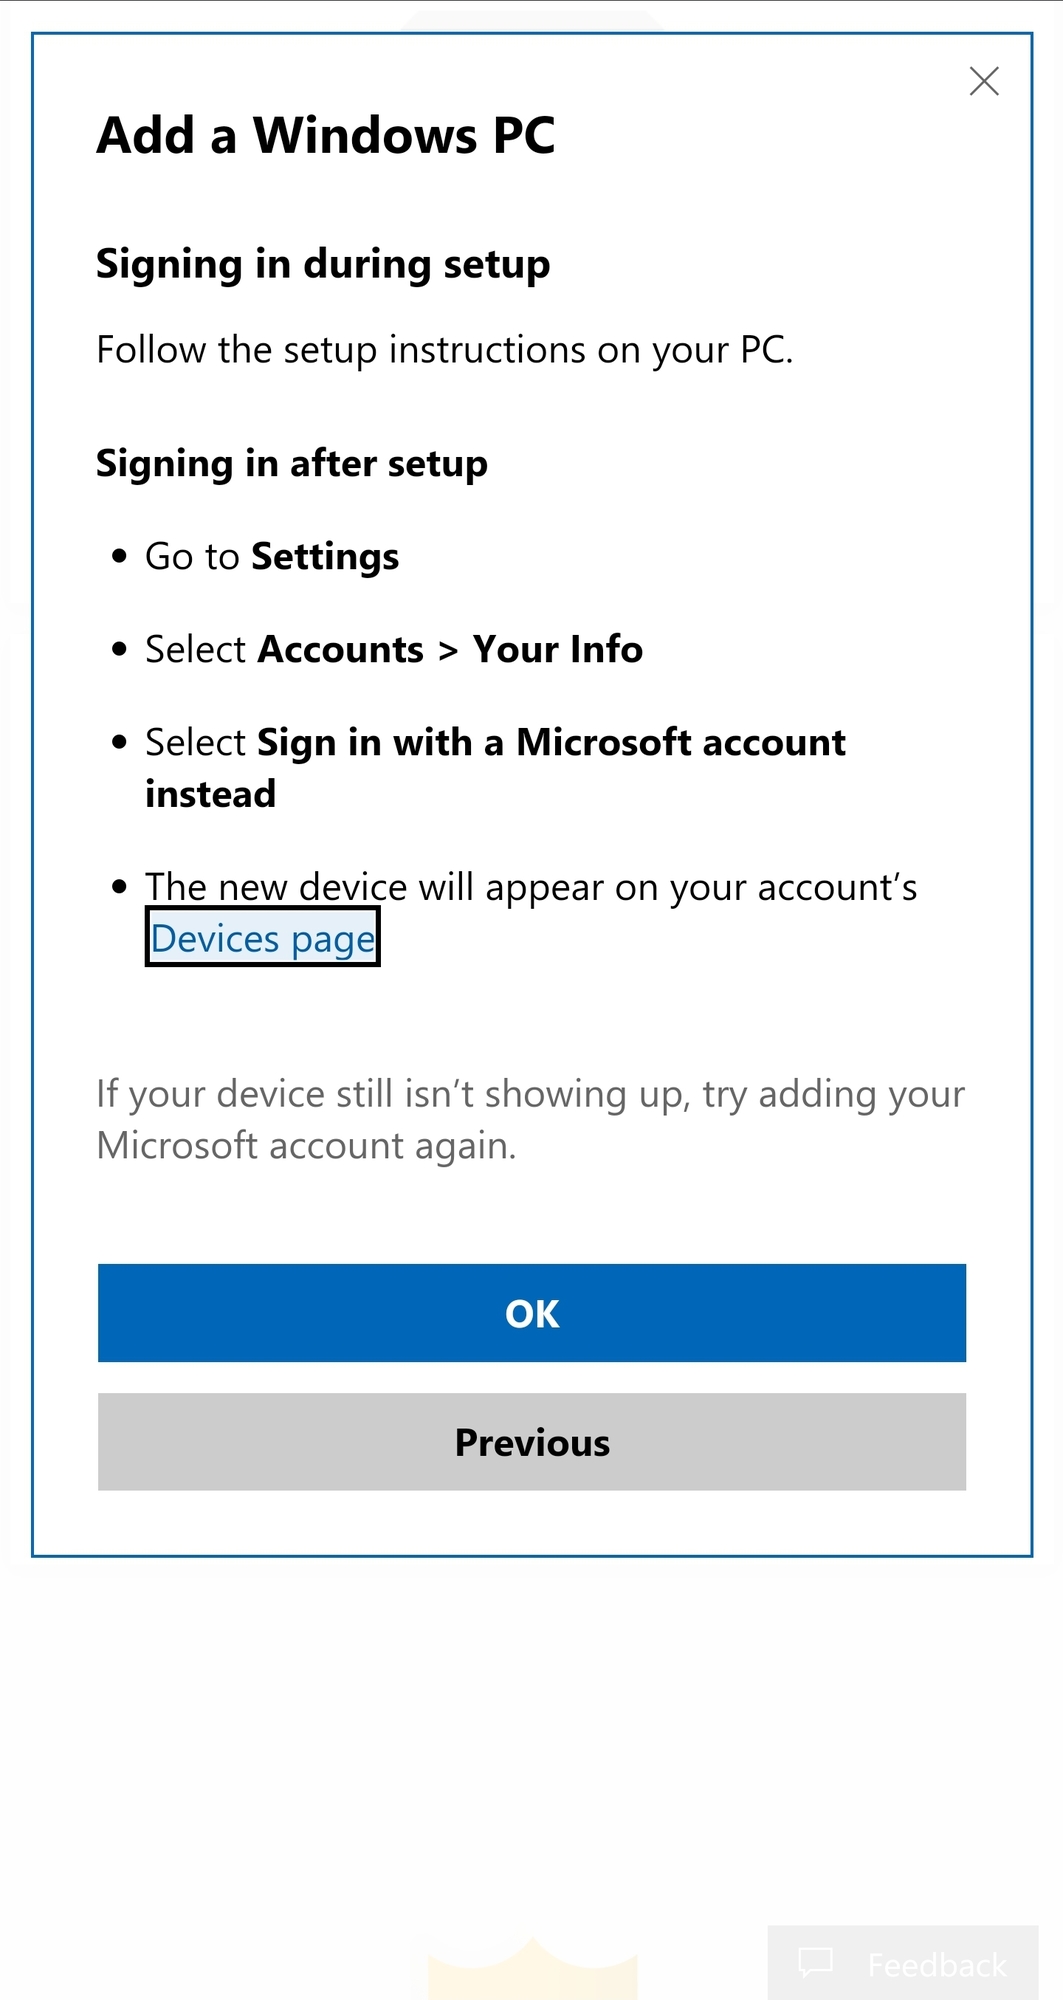 Windows 10 Microsoft online not syncing 83c222dd-d153-40eb-9cc0-89b276c1efdc?upload=true.jpg